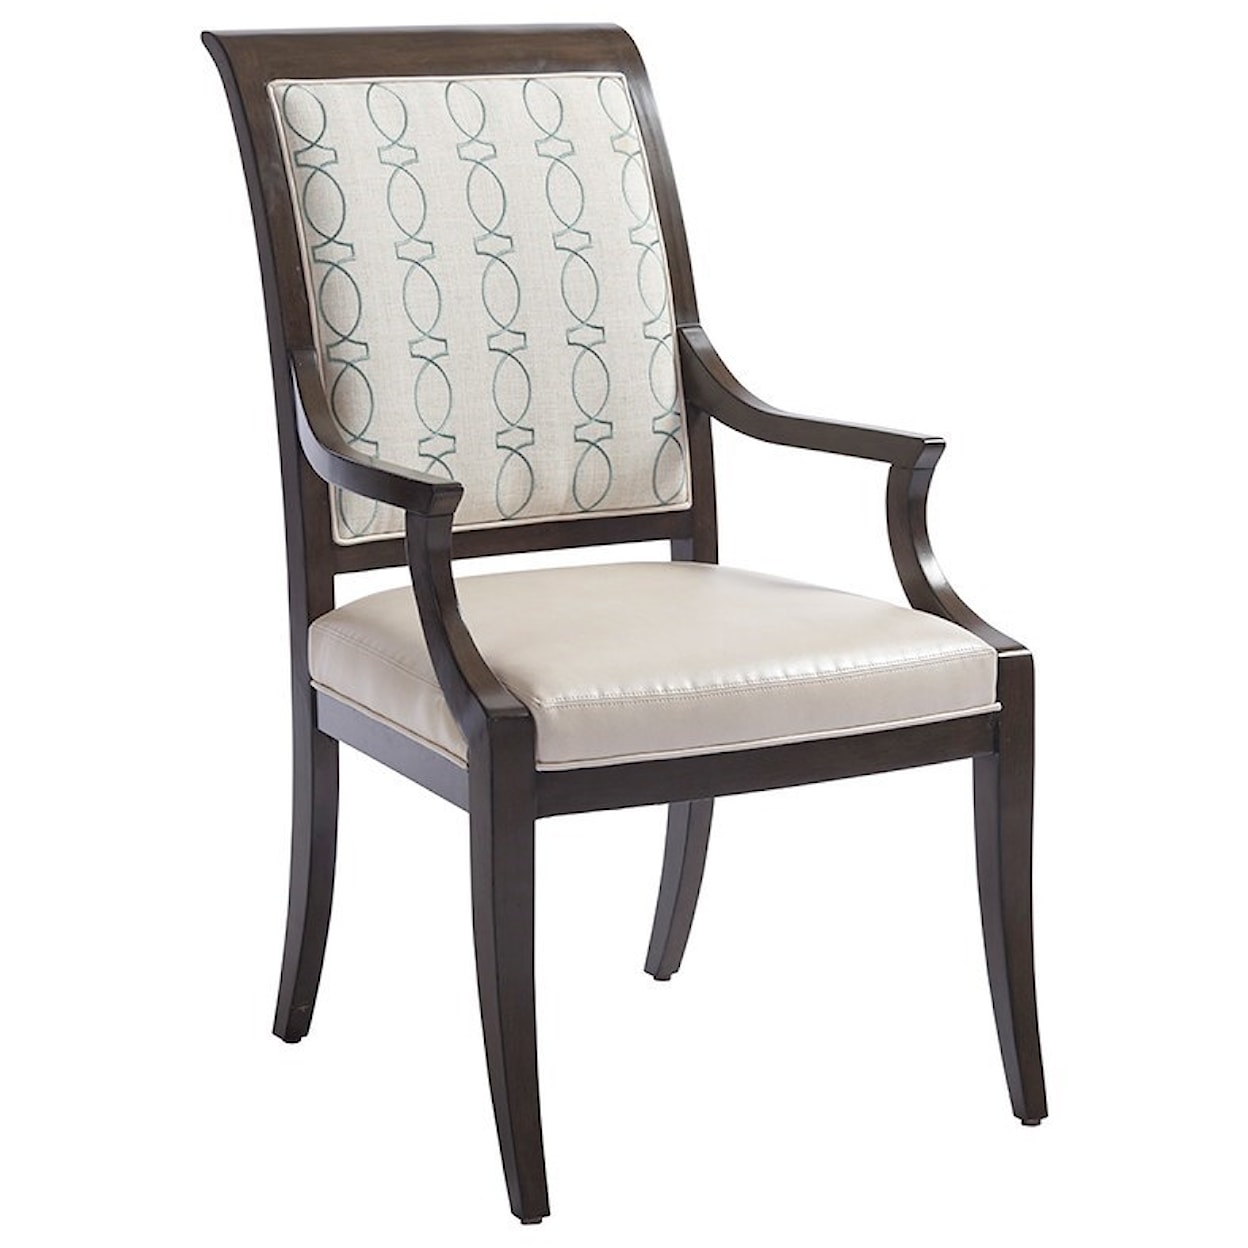 Barclay Butera Brentwood Kathryn Arm Chair (custom)